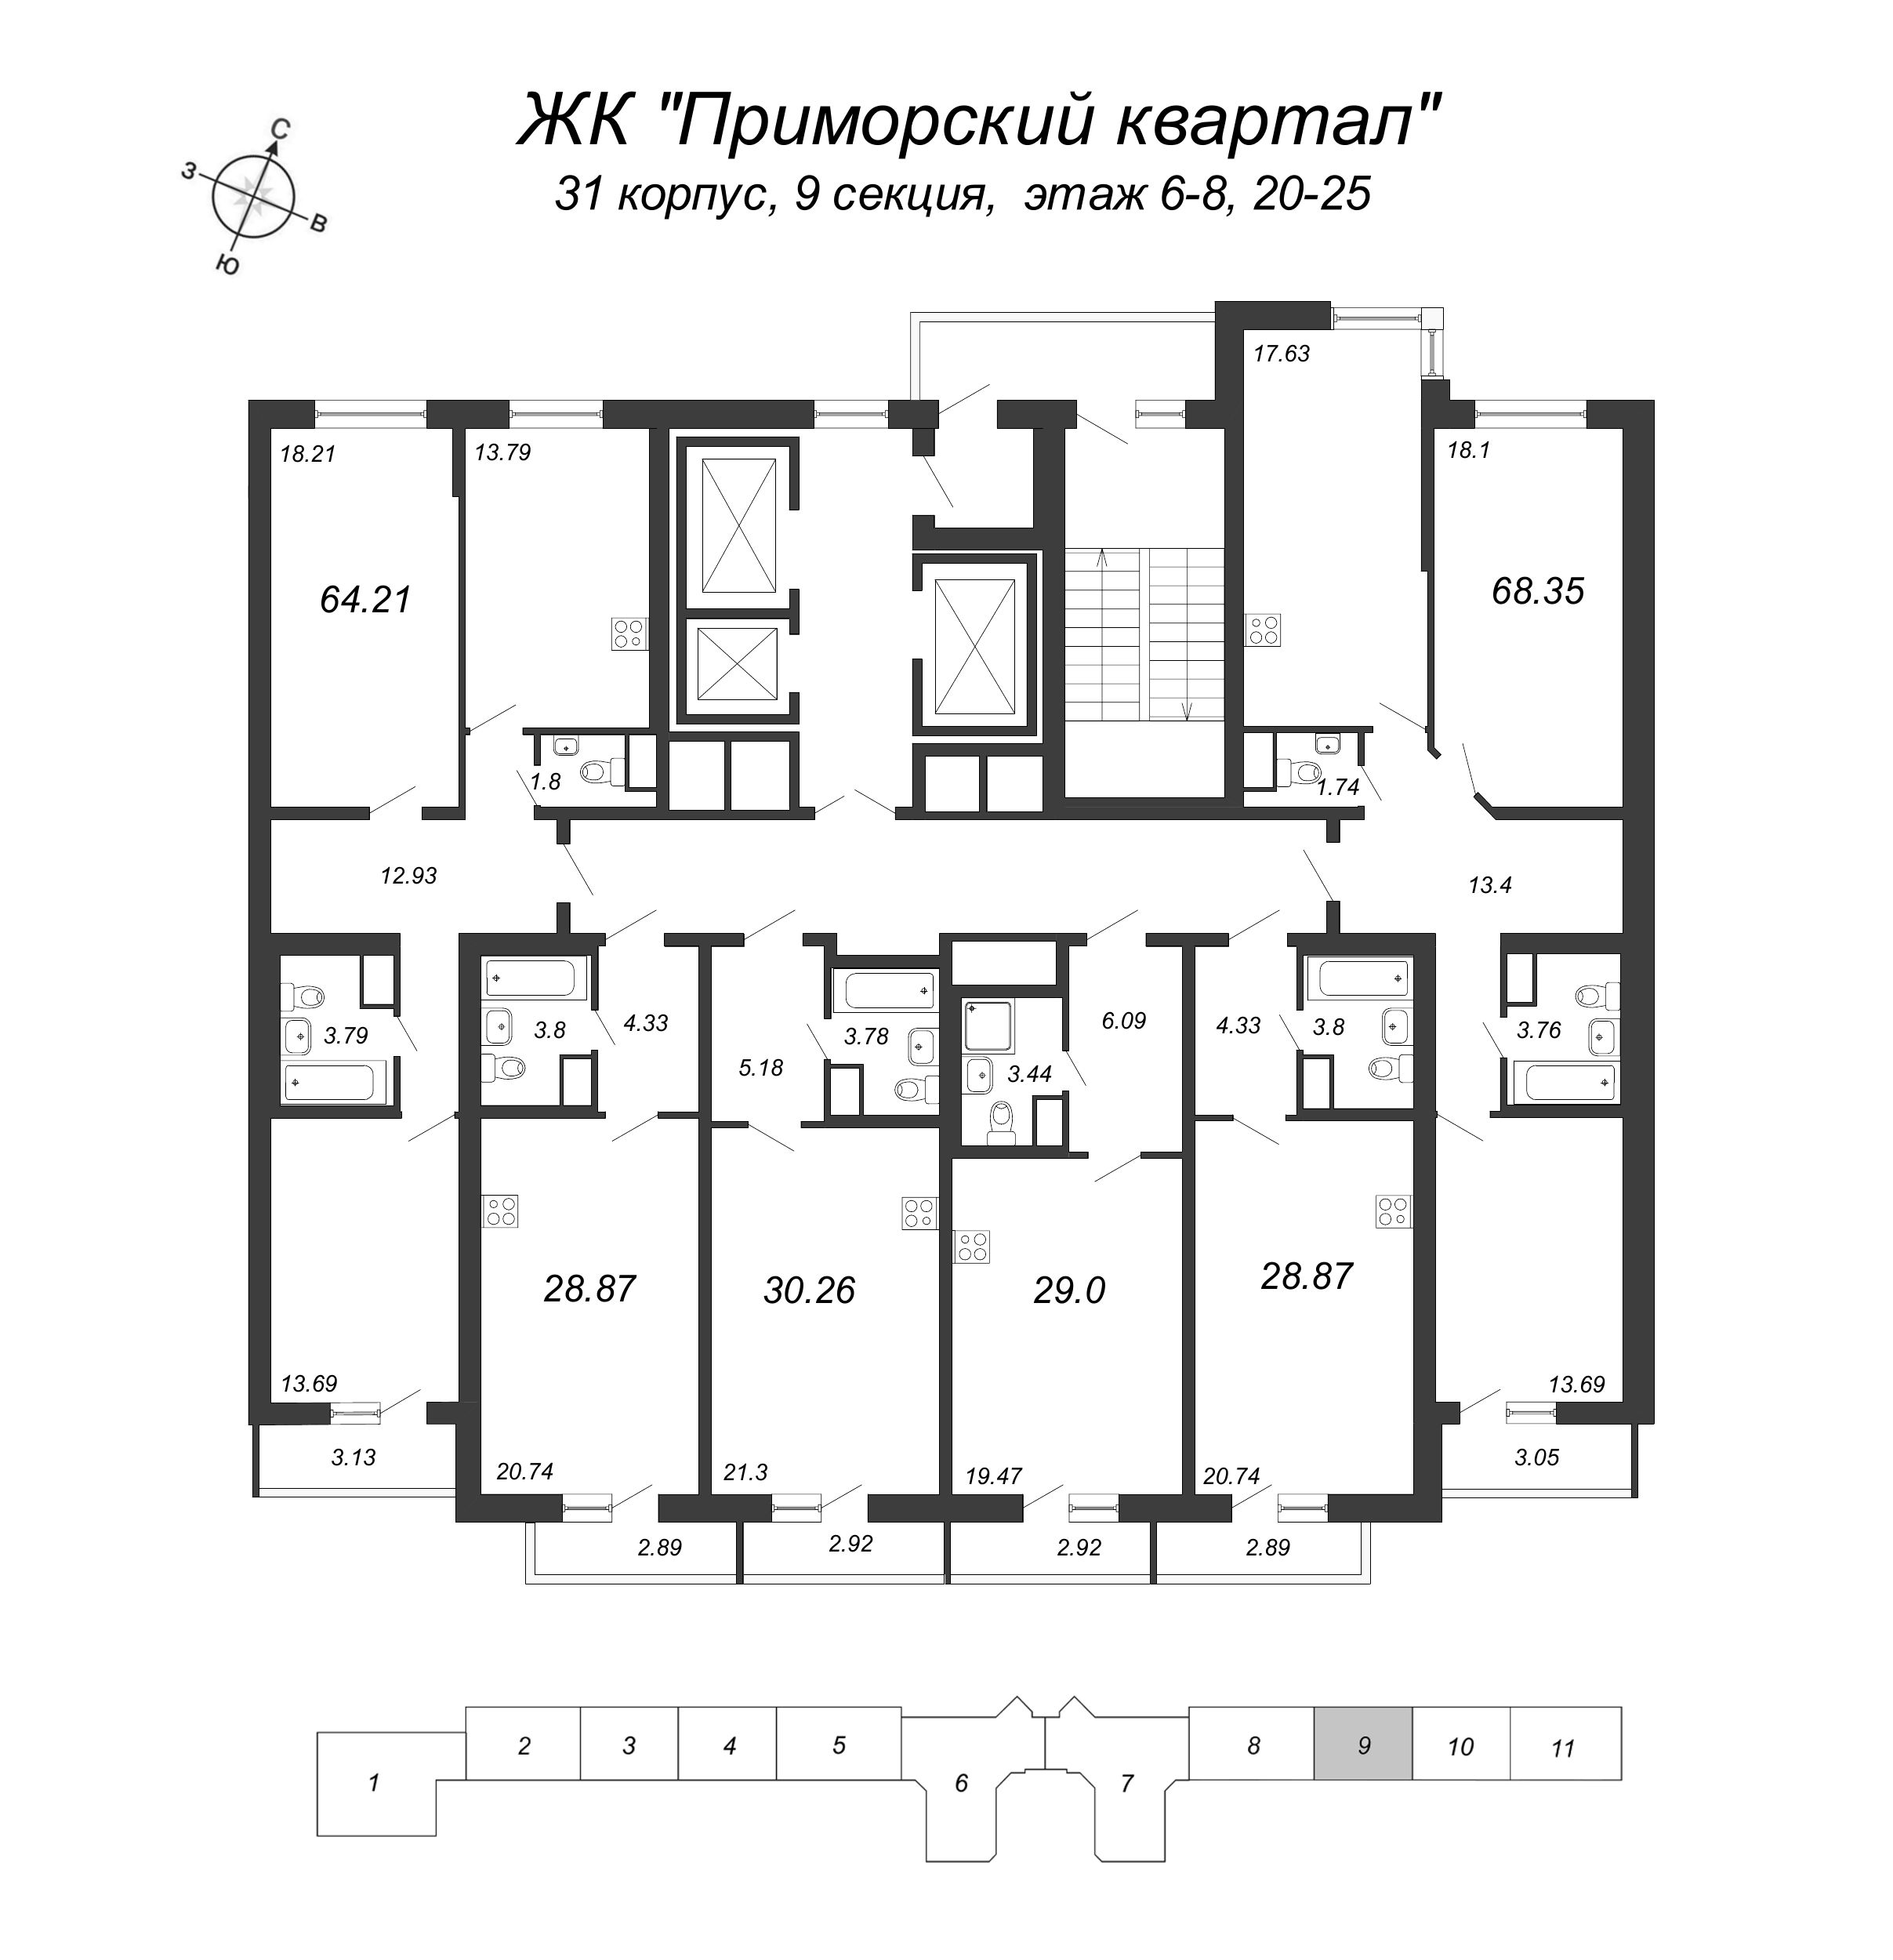 Квартира-студия, 28.87 м² в ЖК "Приморский квартал" - планировка этажа